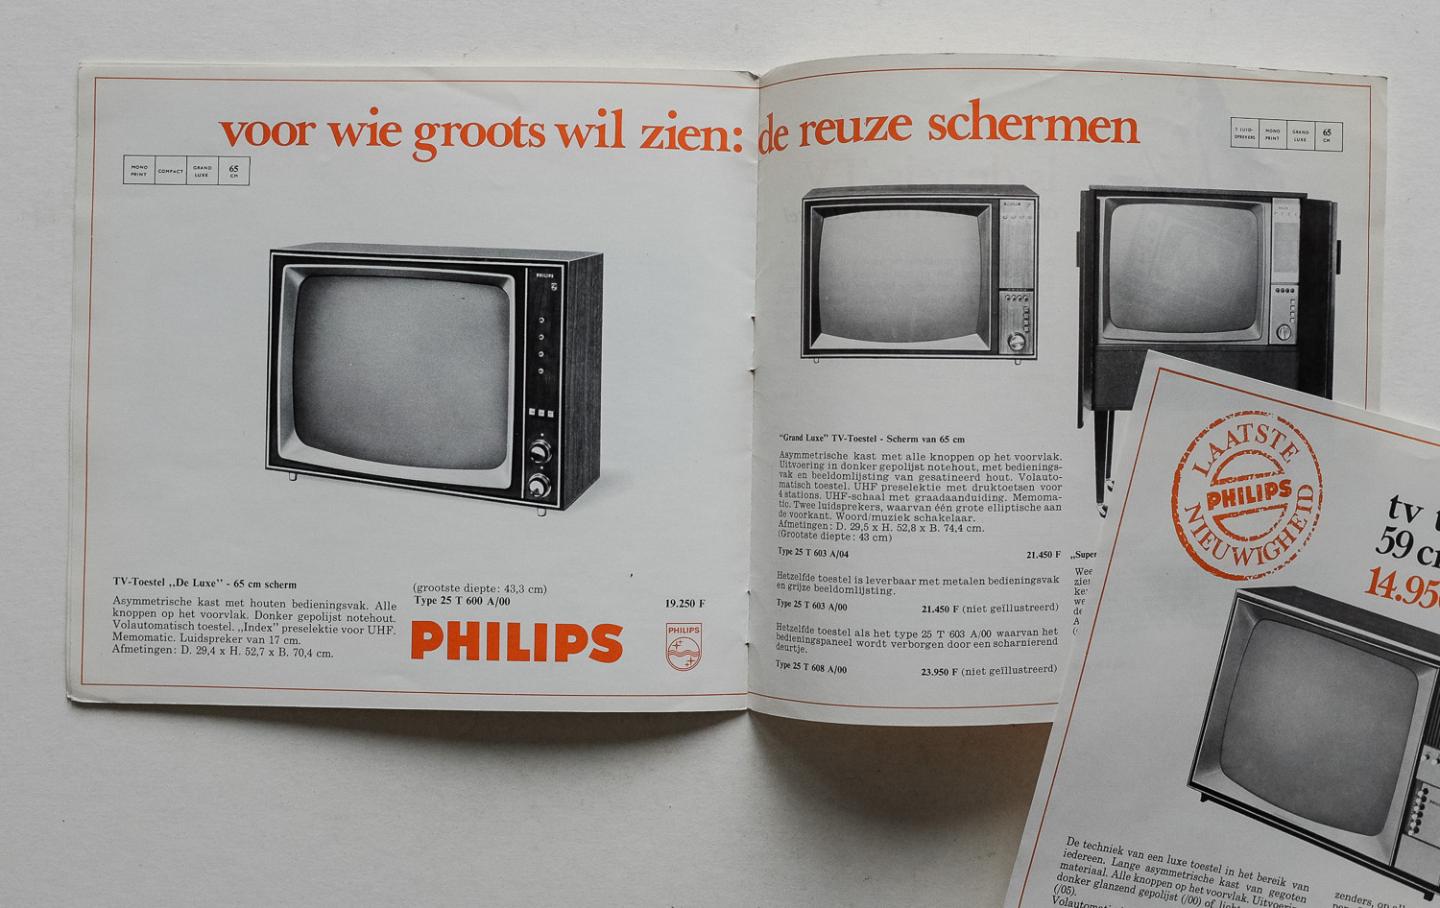 Philips Gloeilampenfabrieken Nederland n.v., Eindhoven - TV Philips 68 - nog automatischer!